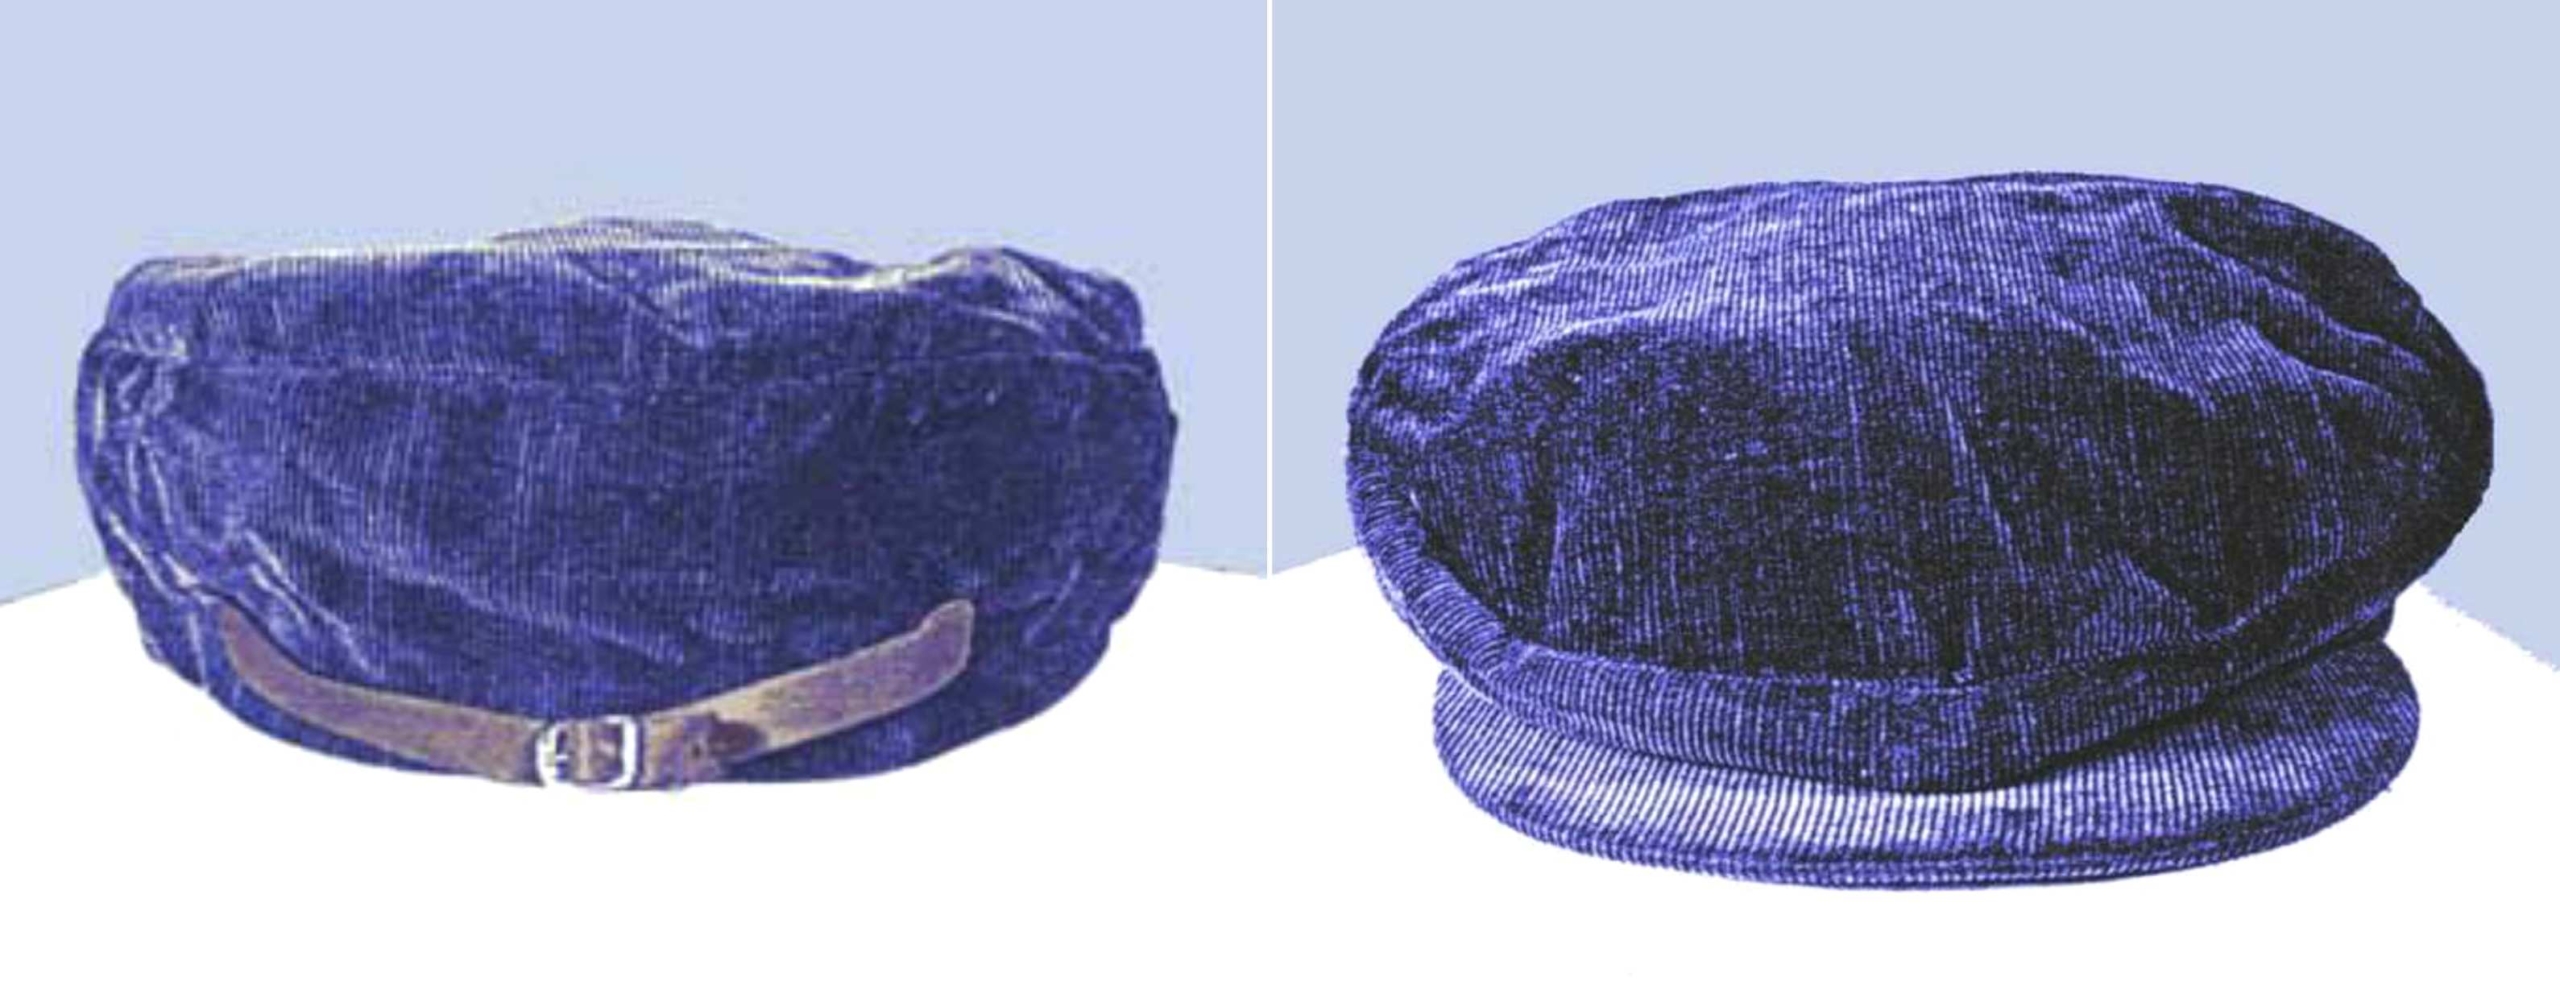 Плава капуљача капа пронађена у близини места злочина. © Кредит за слику: Америцасункновнцхилд